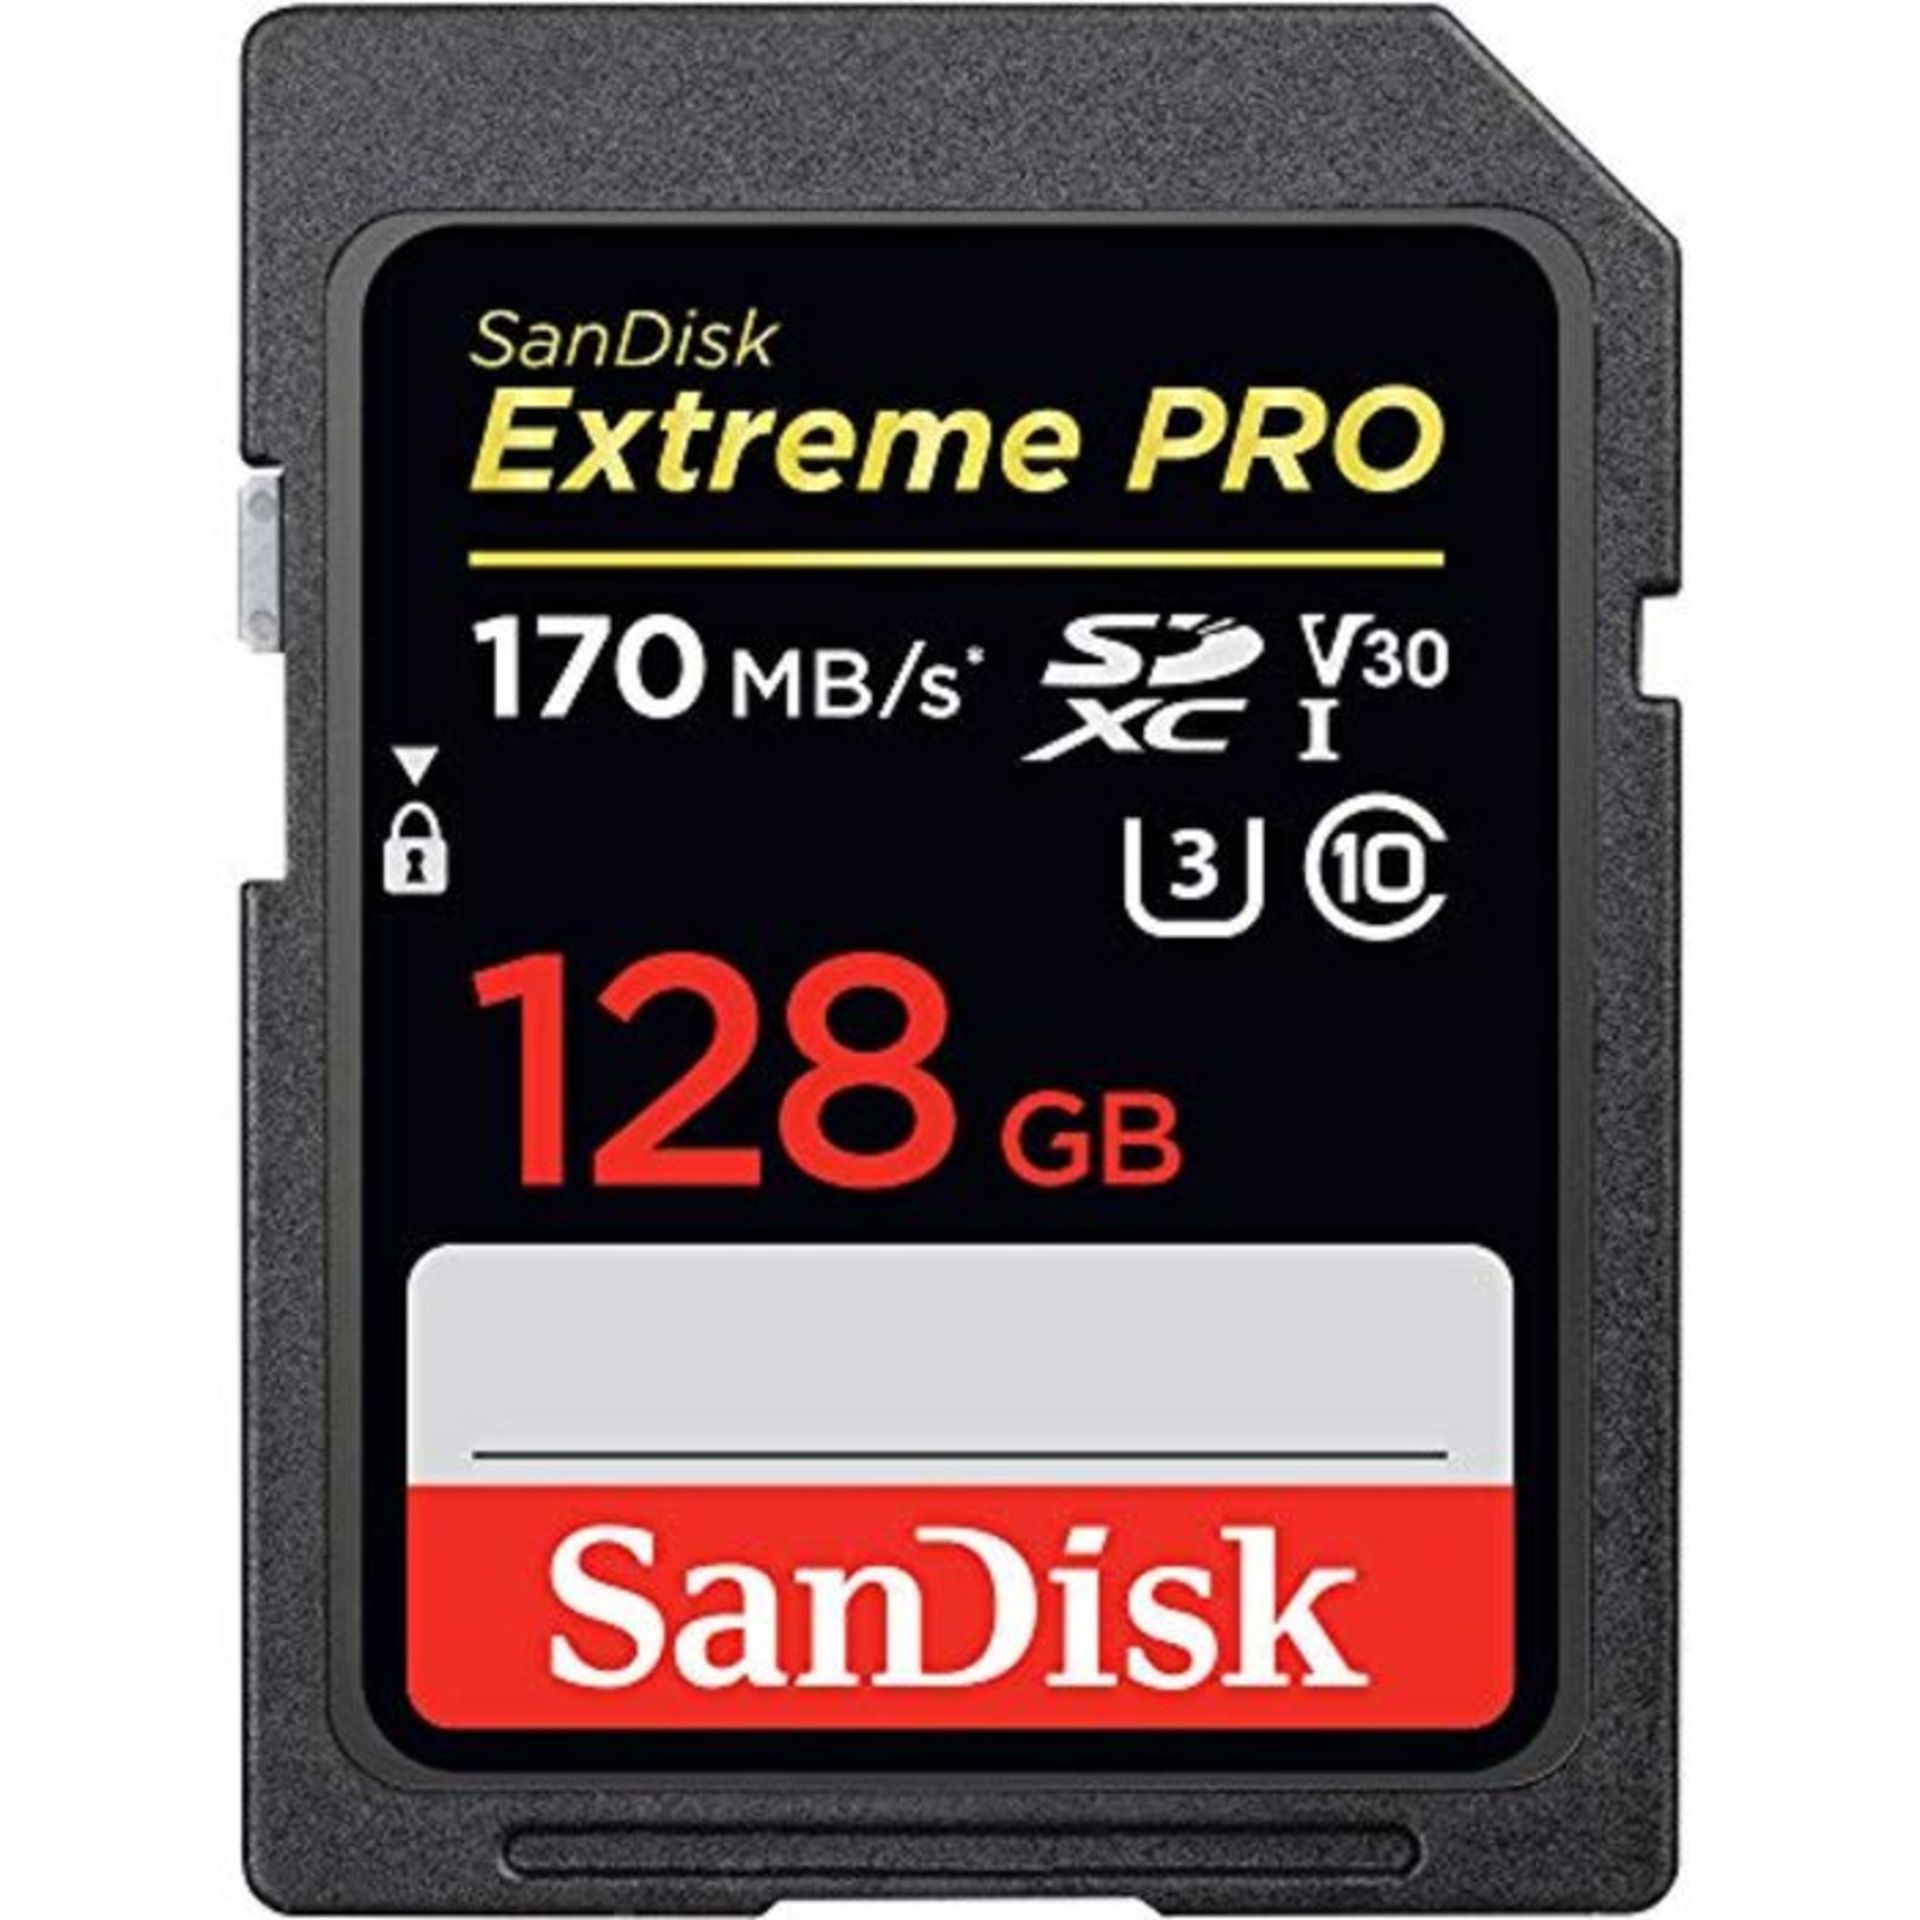 SanDisk Extreme PRO, Scheda di memoria da 128 GB SDXC fino a 170 MB / s, UHS-1, Classe